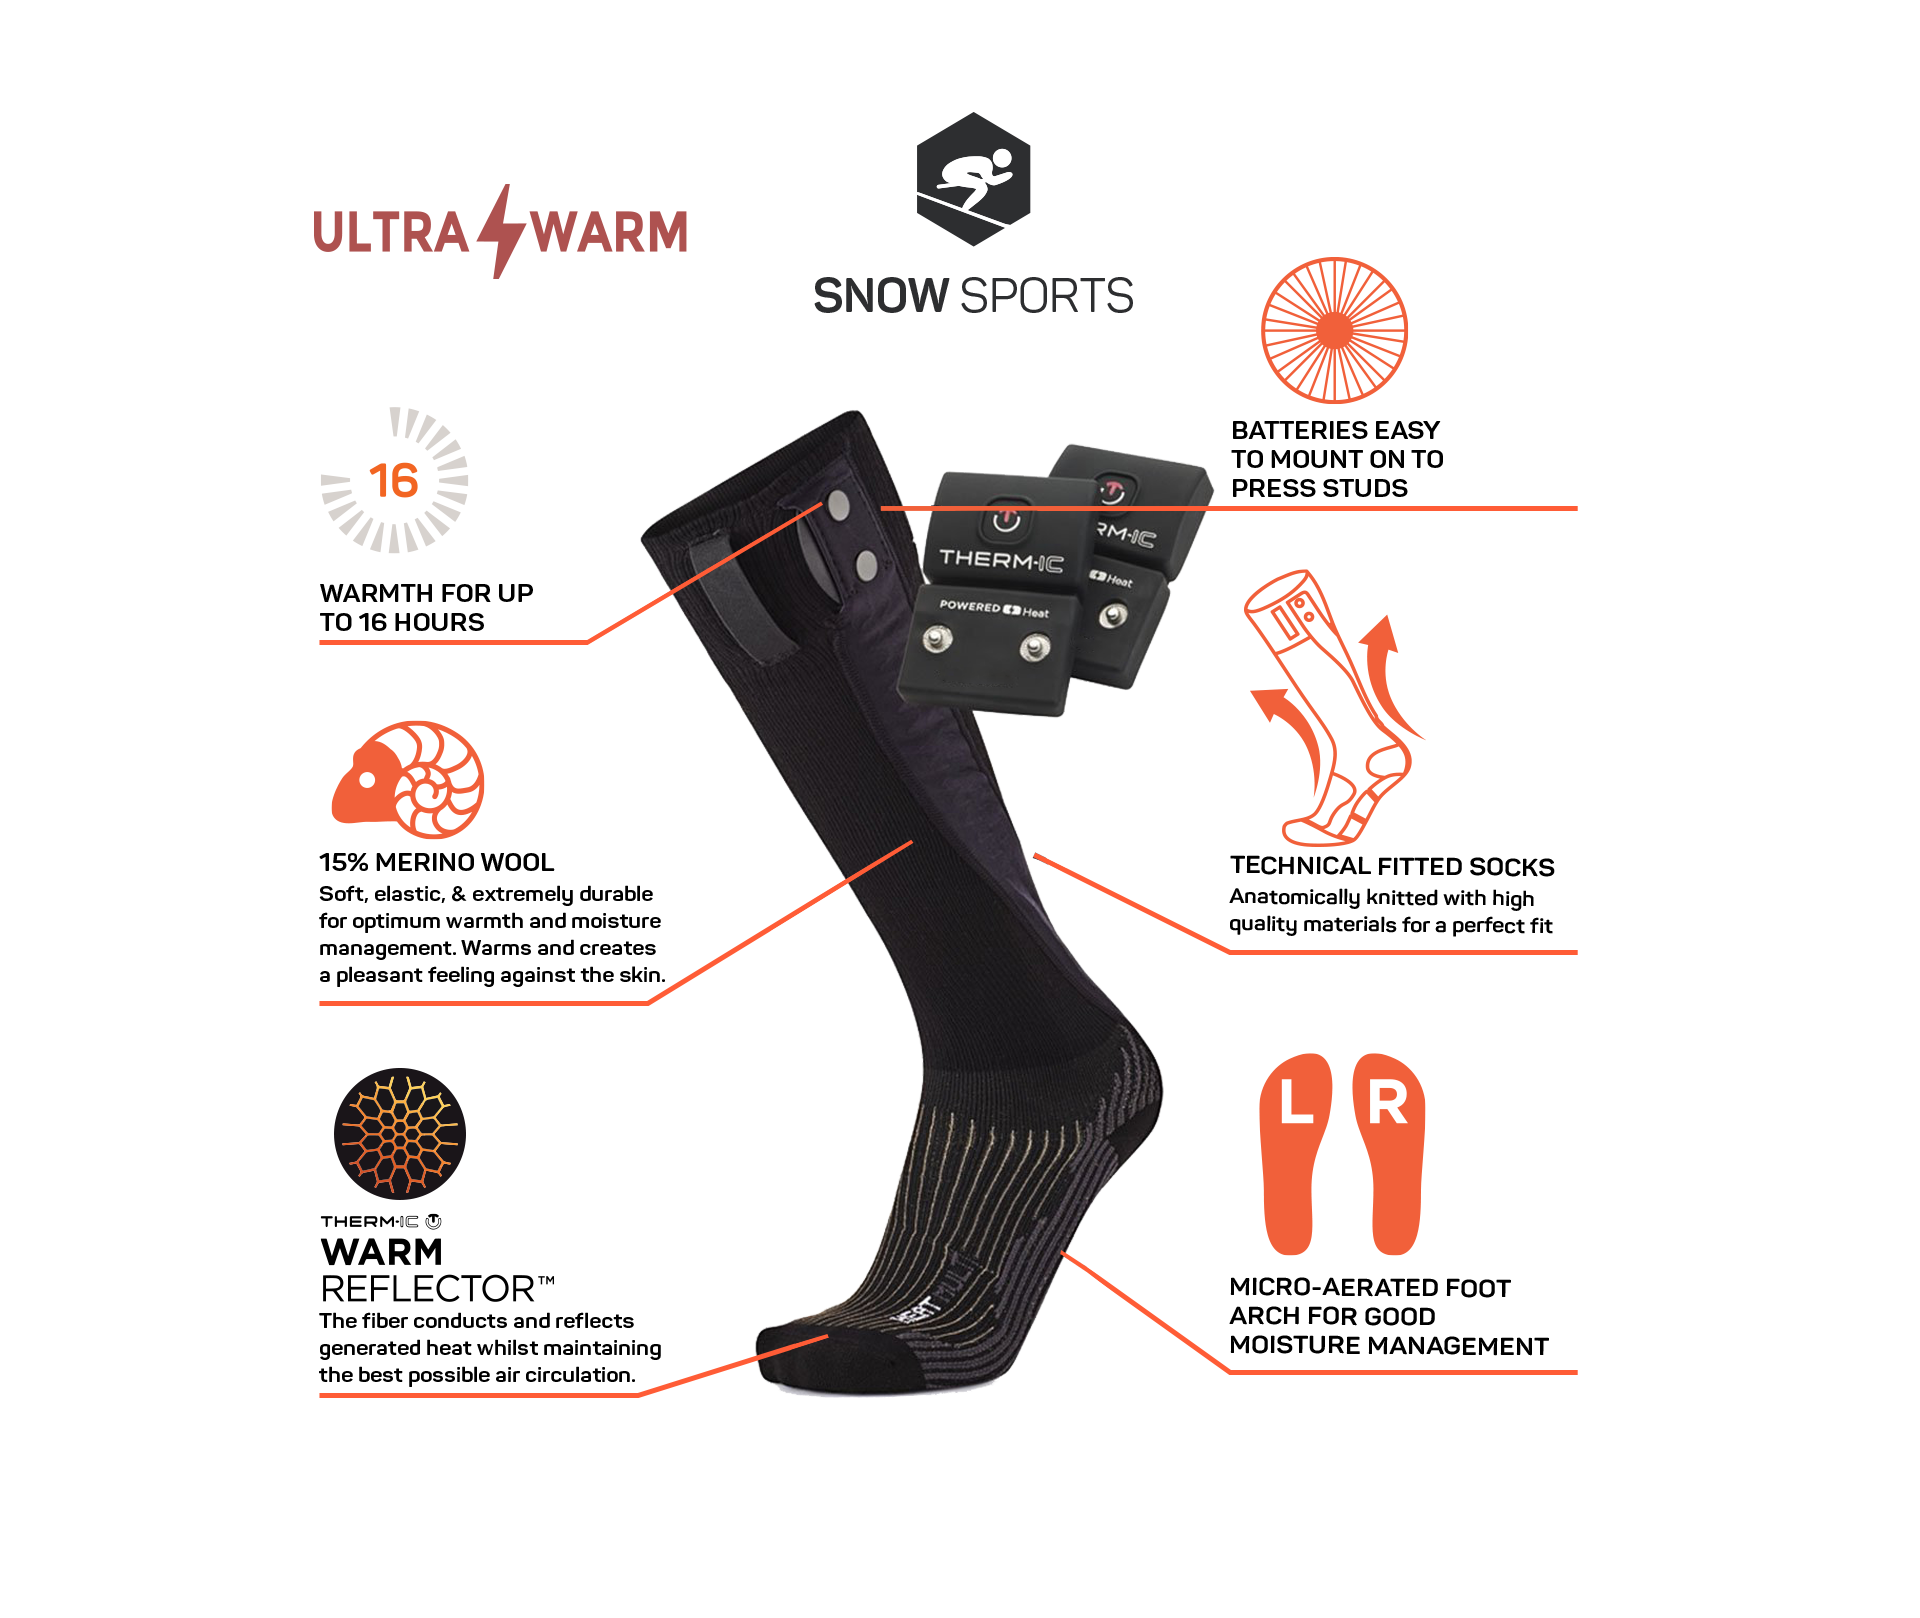 Sidas - Thermic / Sock Ski Ultrafit Lv